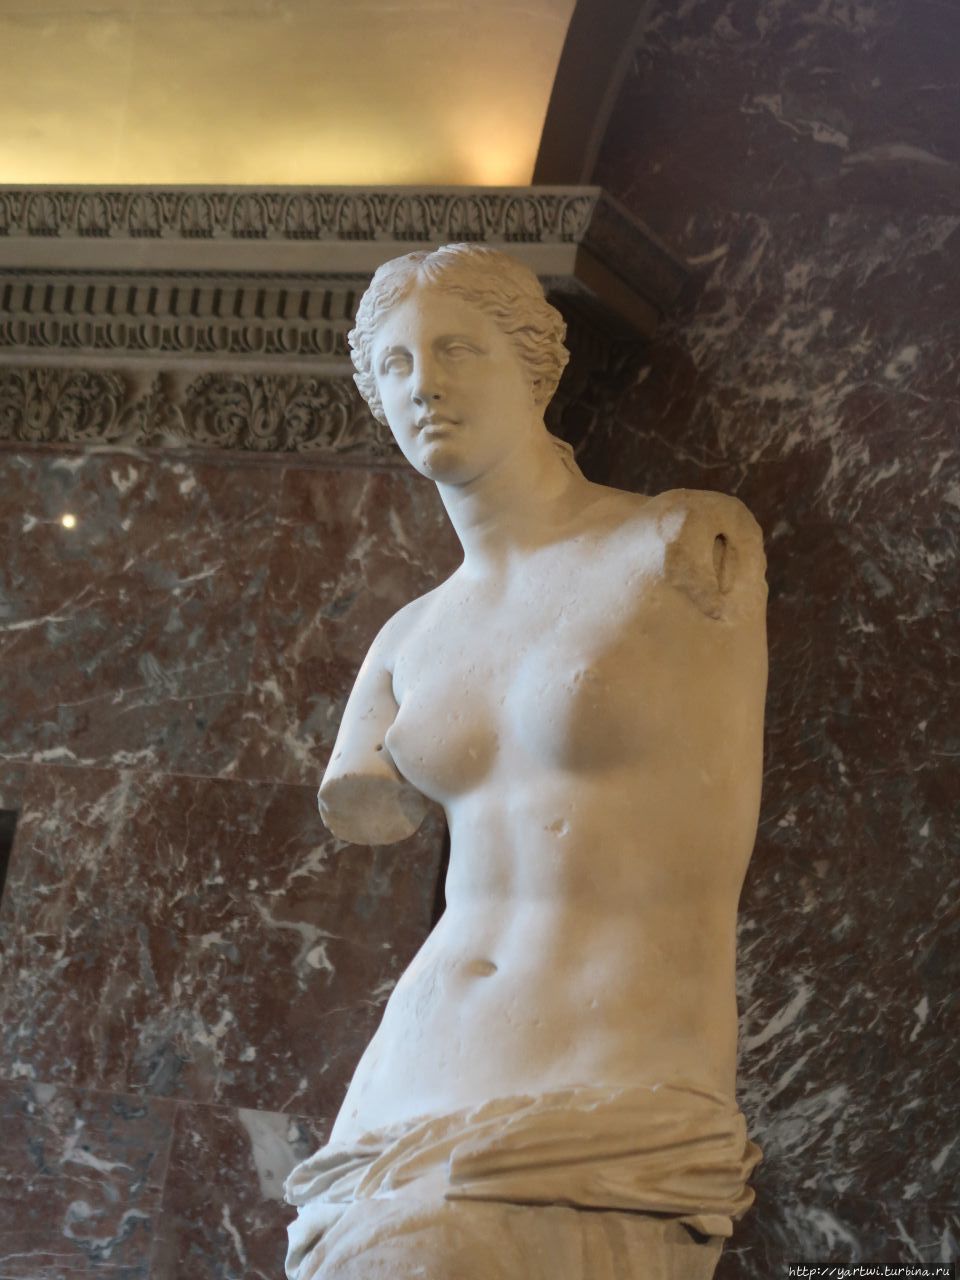 Статуя богини любви Афродиты (Венеры Милосской) из белого мрамора. Пропорции тела при перерасчёте на рост 164 см составляют 89-69-93. Туристов много, но значительно меньше, чем возле Джоконды. Париж, Франция